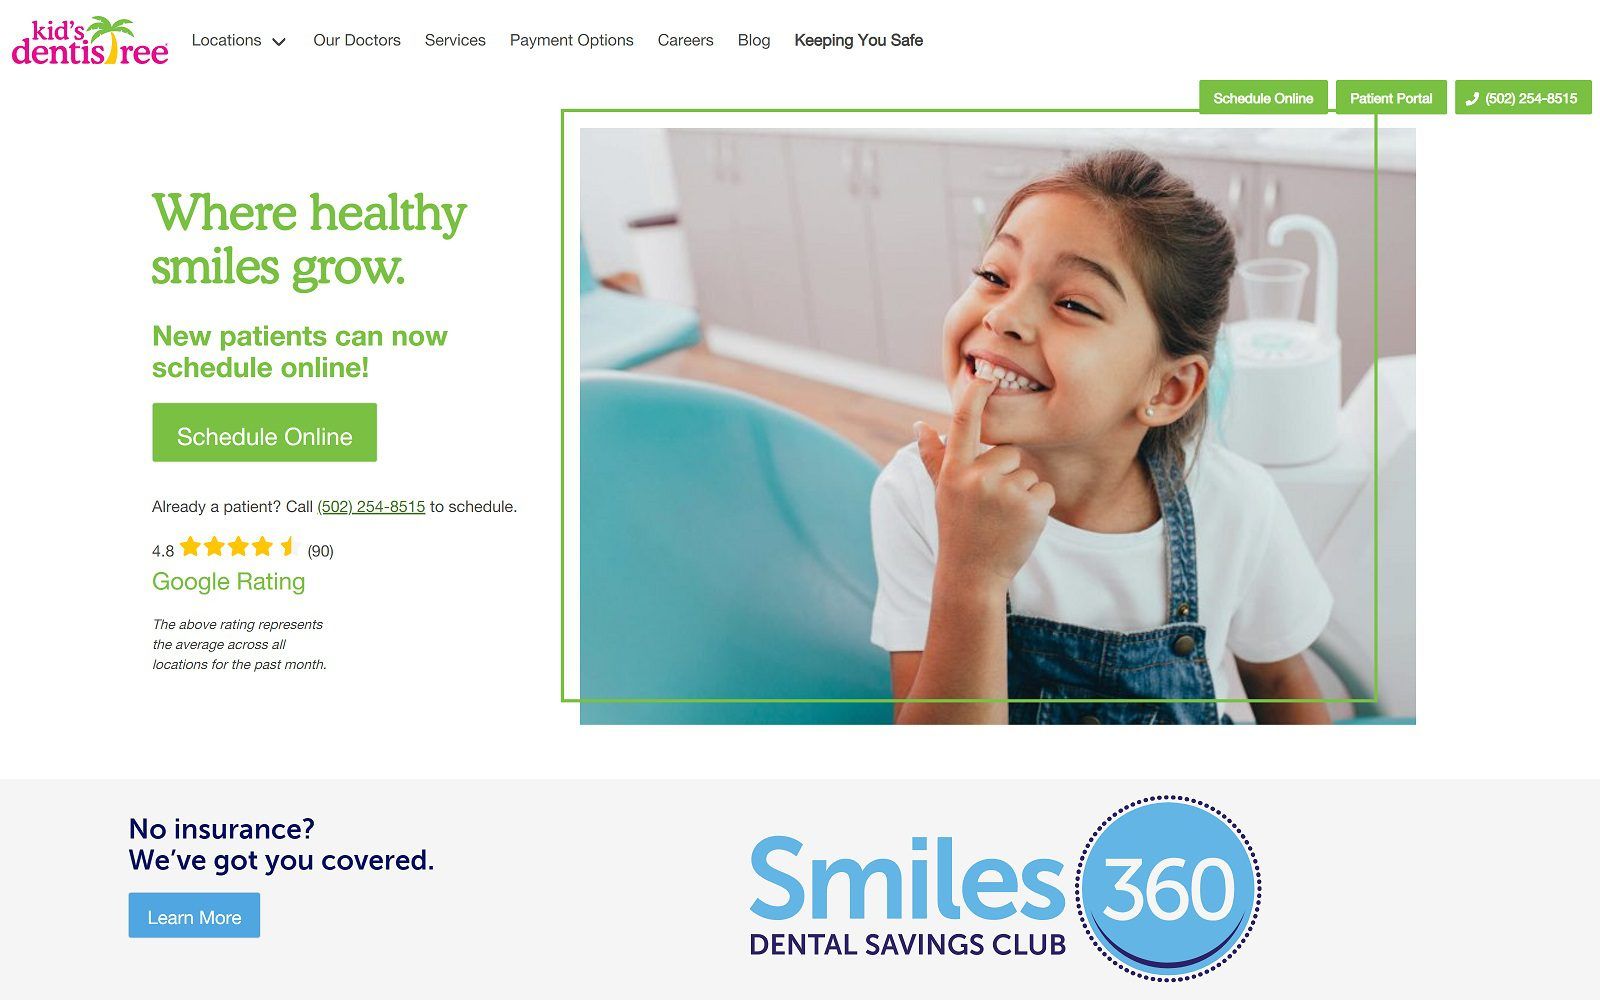 The screenshot of kid’s dentistree outer loop website